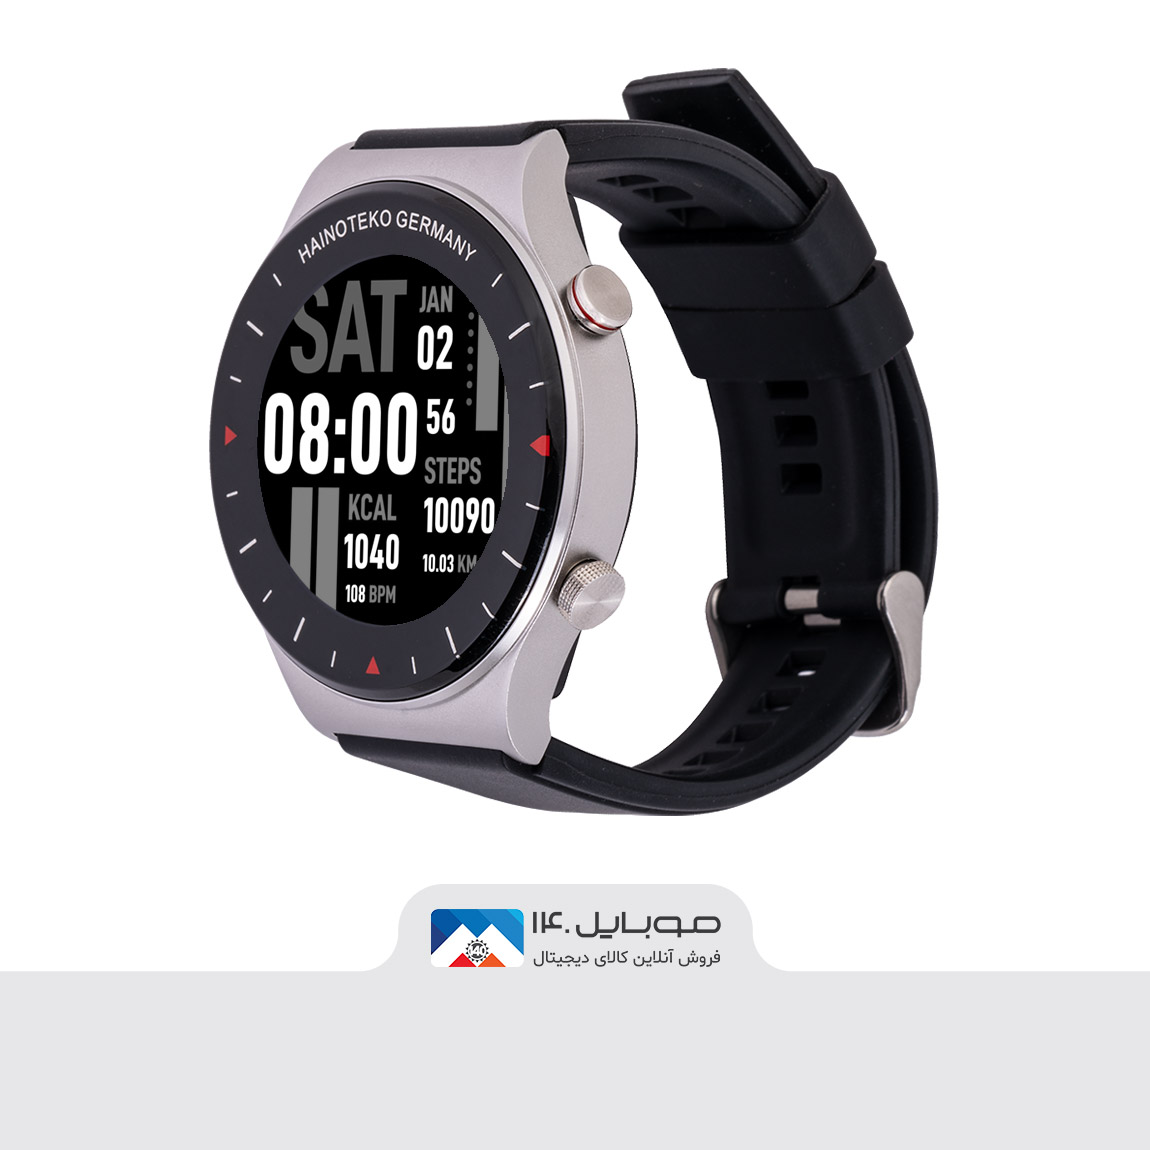 Hainoteko C5 Smart Watch 7